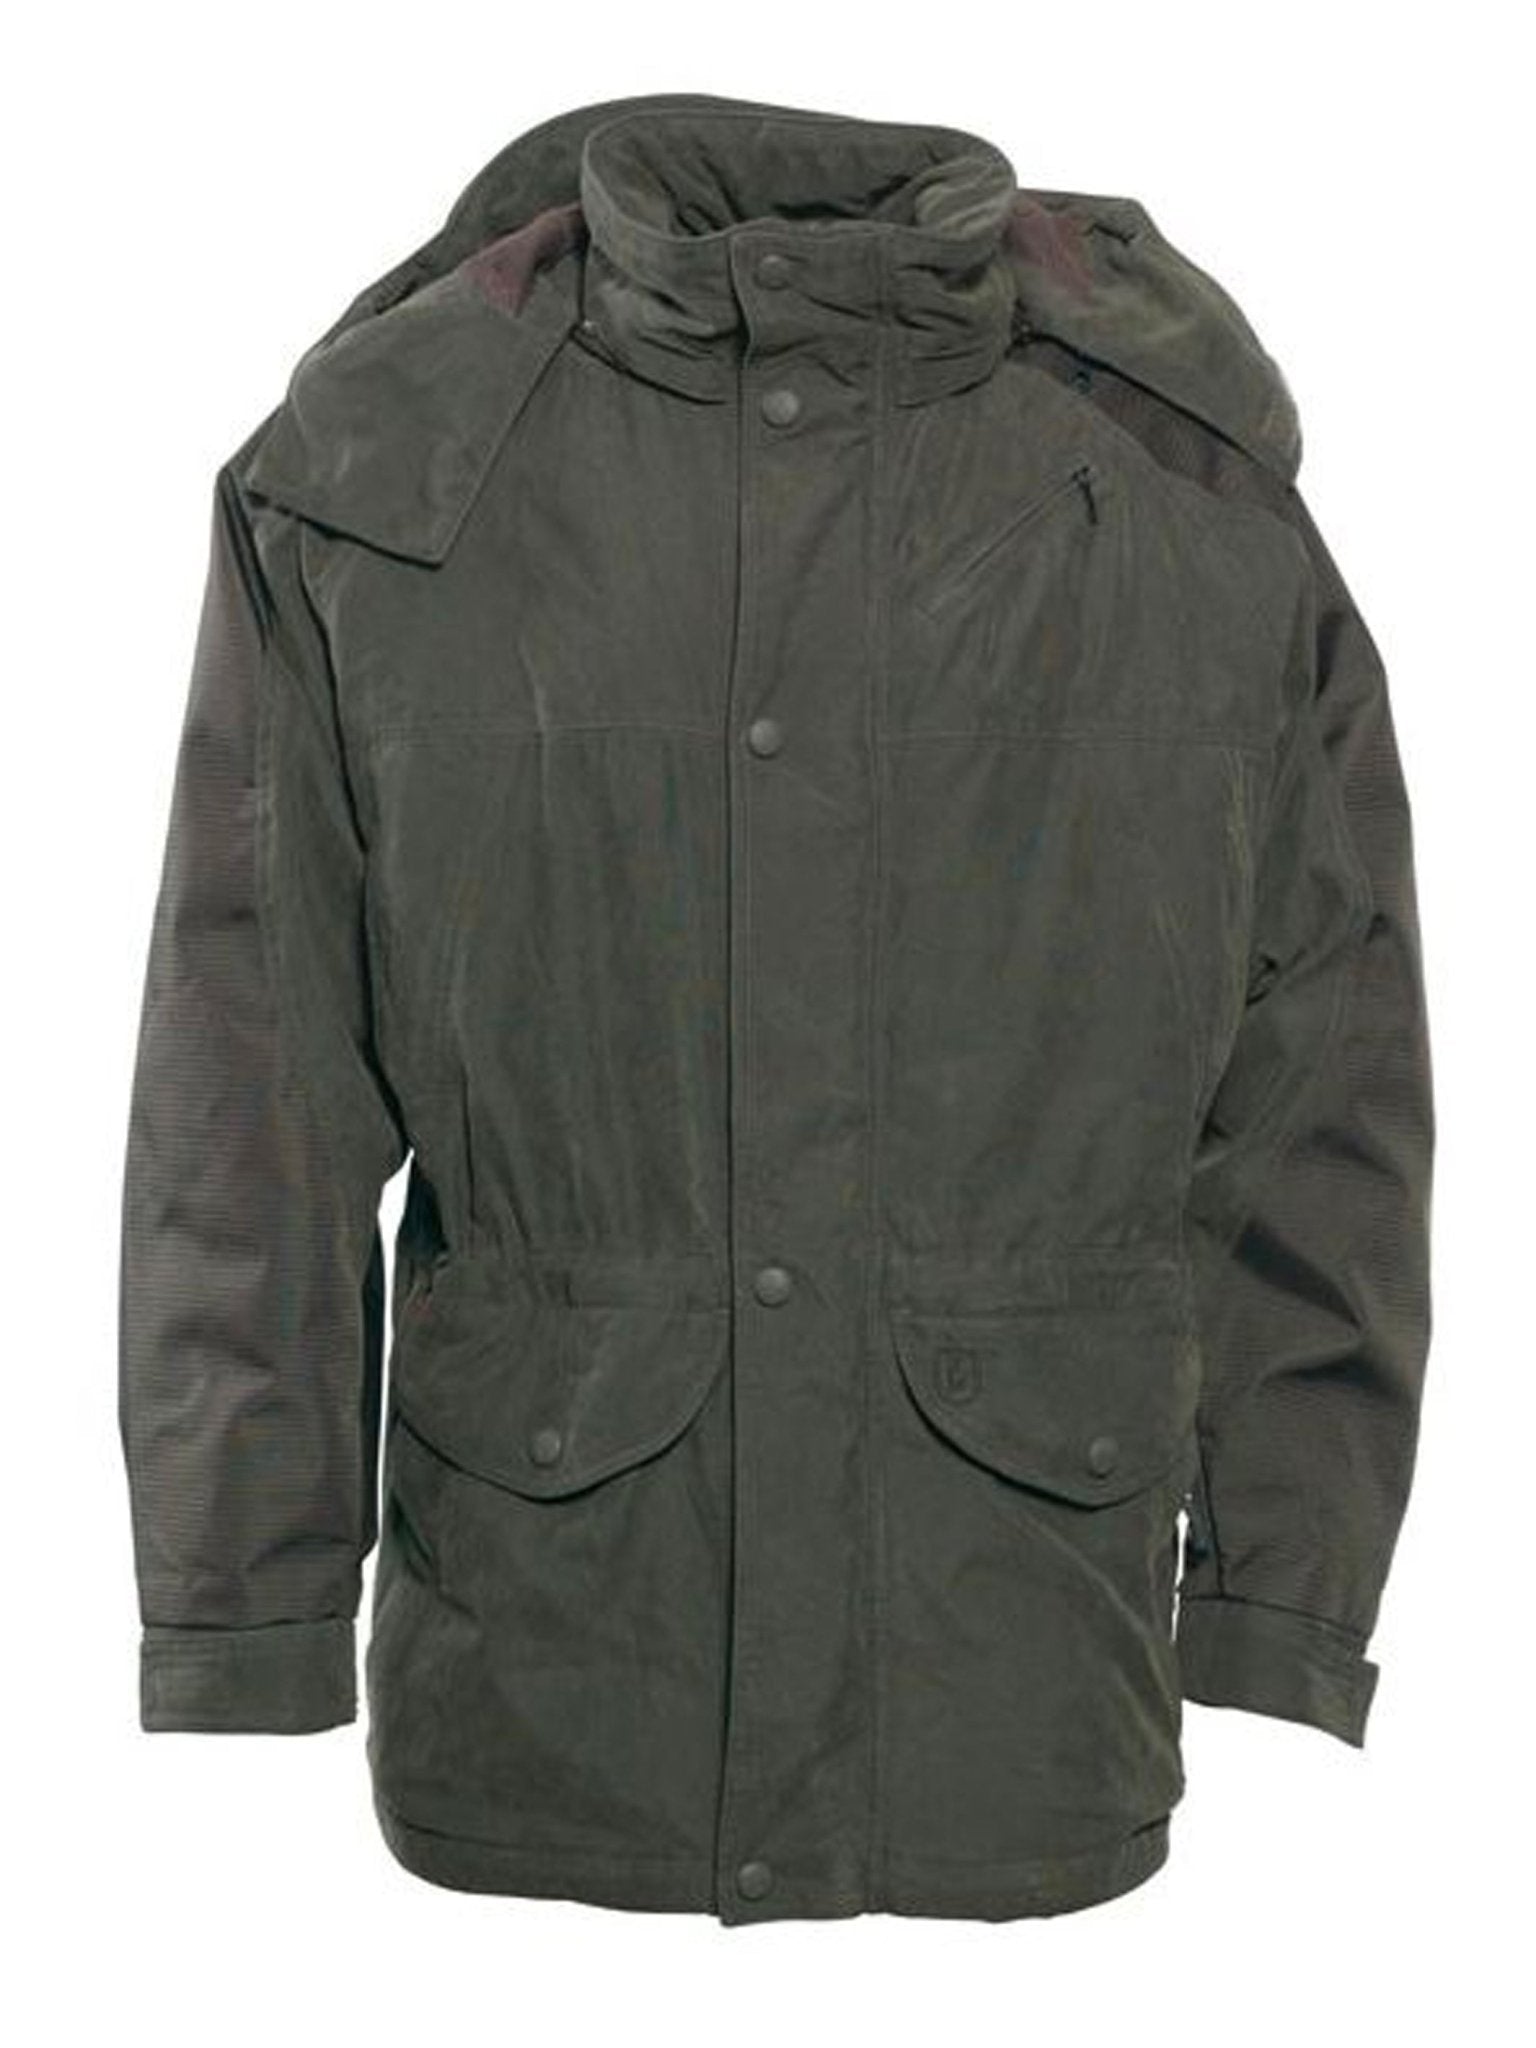 4elementsclothingDeerhunterDeerhunter - Smallville Mens Waterproof Jacket / Coat - Windproof / waterproof hunting jacketOuterwear5347-382-48